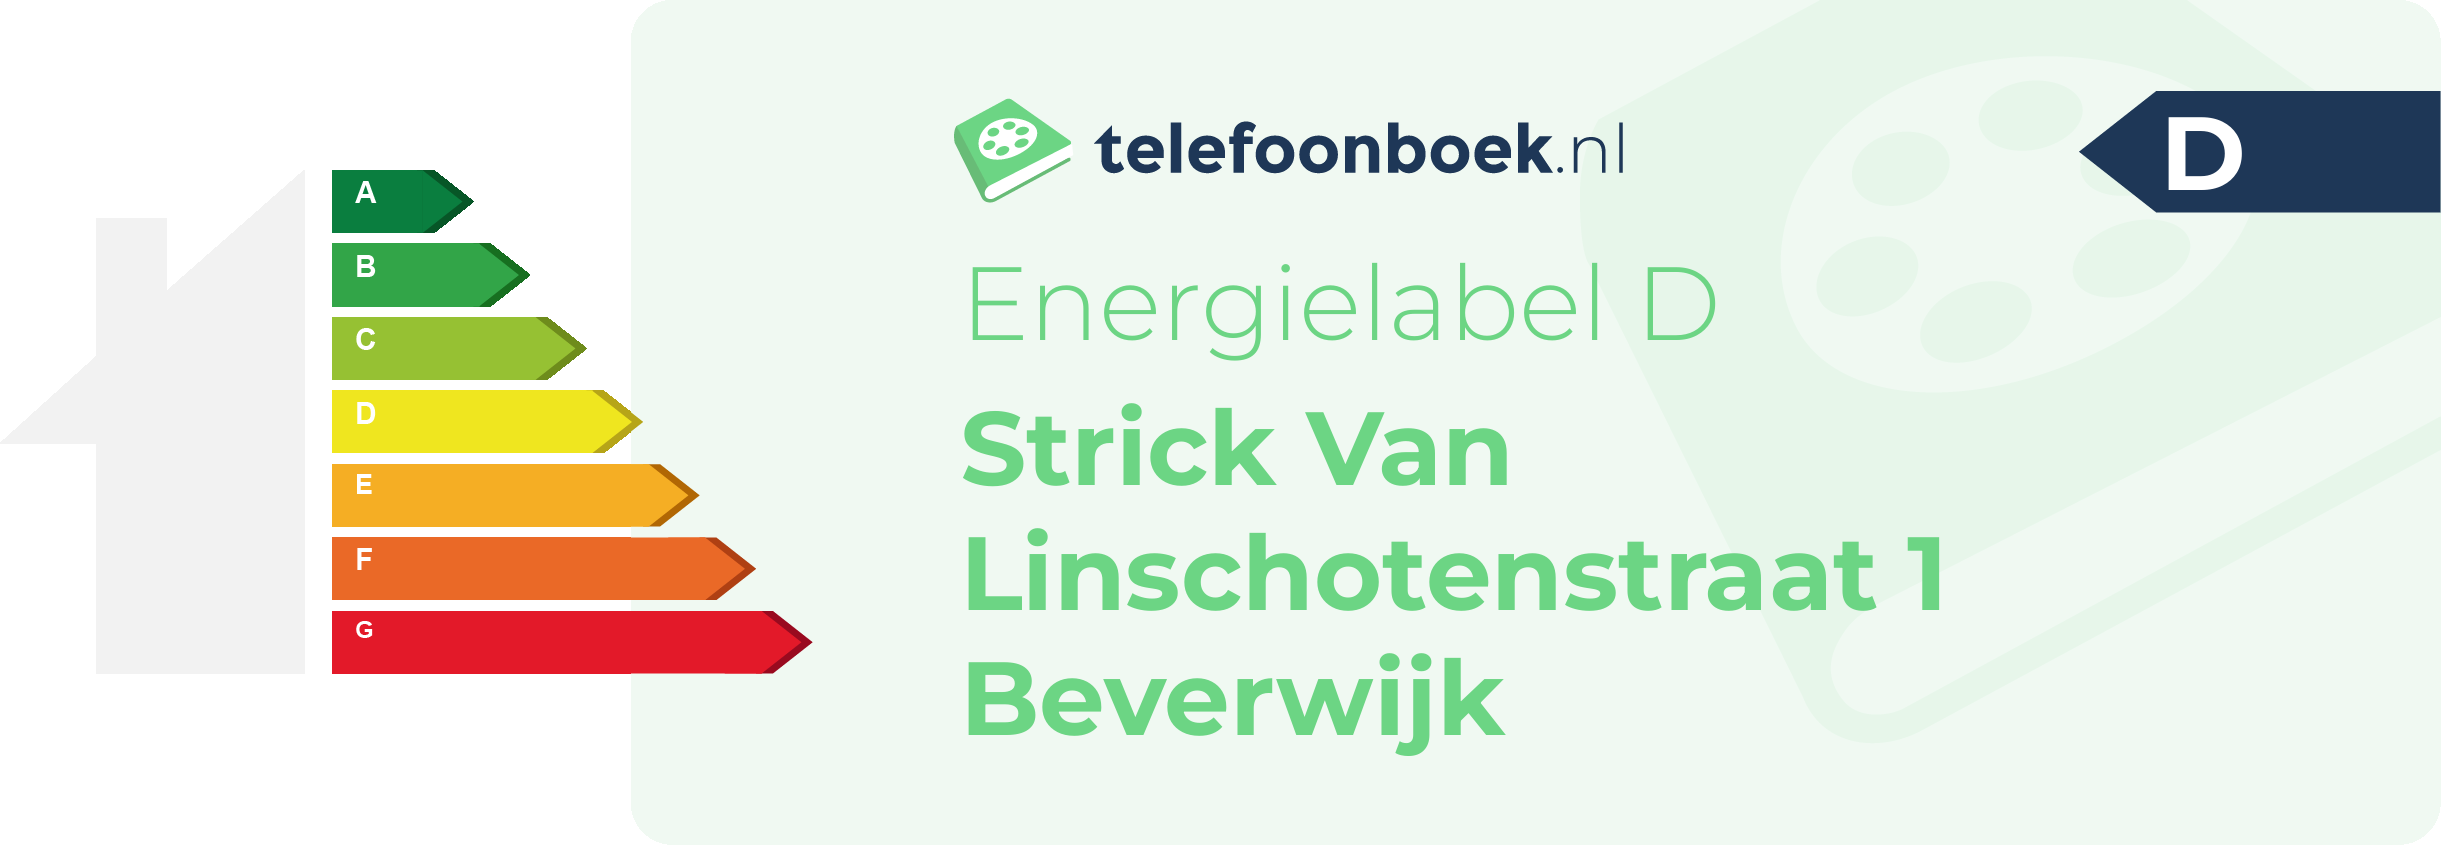 Energielabel Strick Van Linschotenstraat 1 Beverwijk